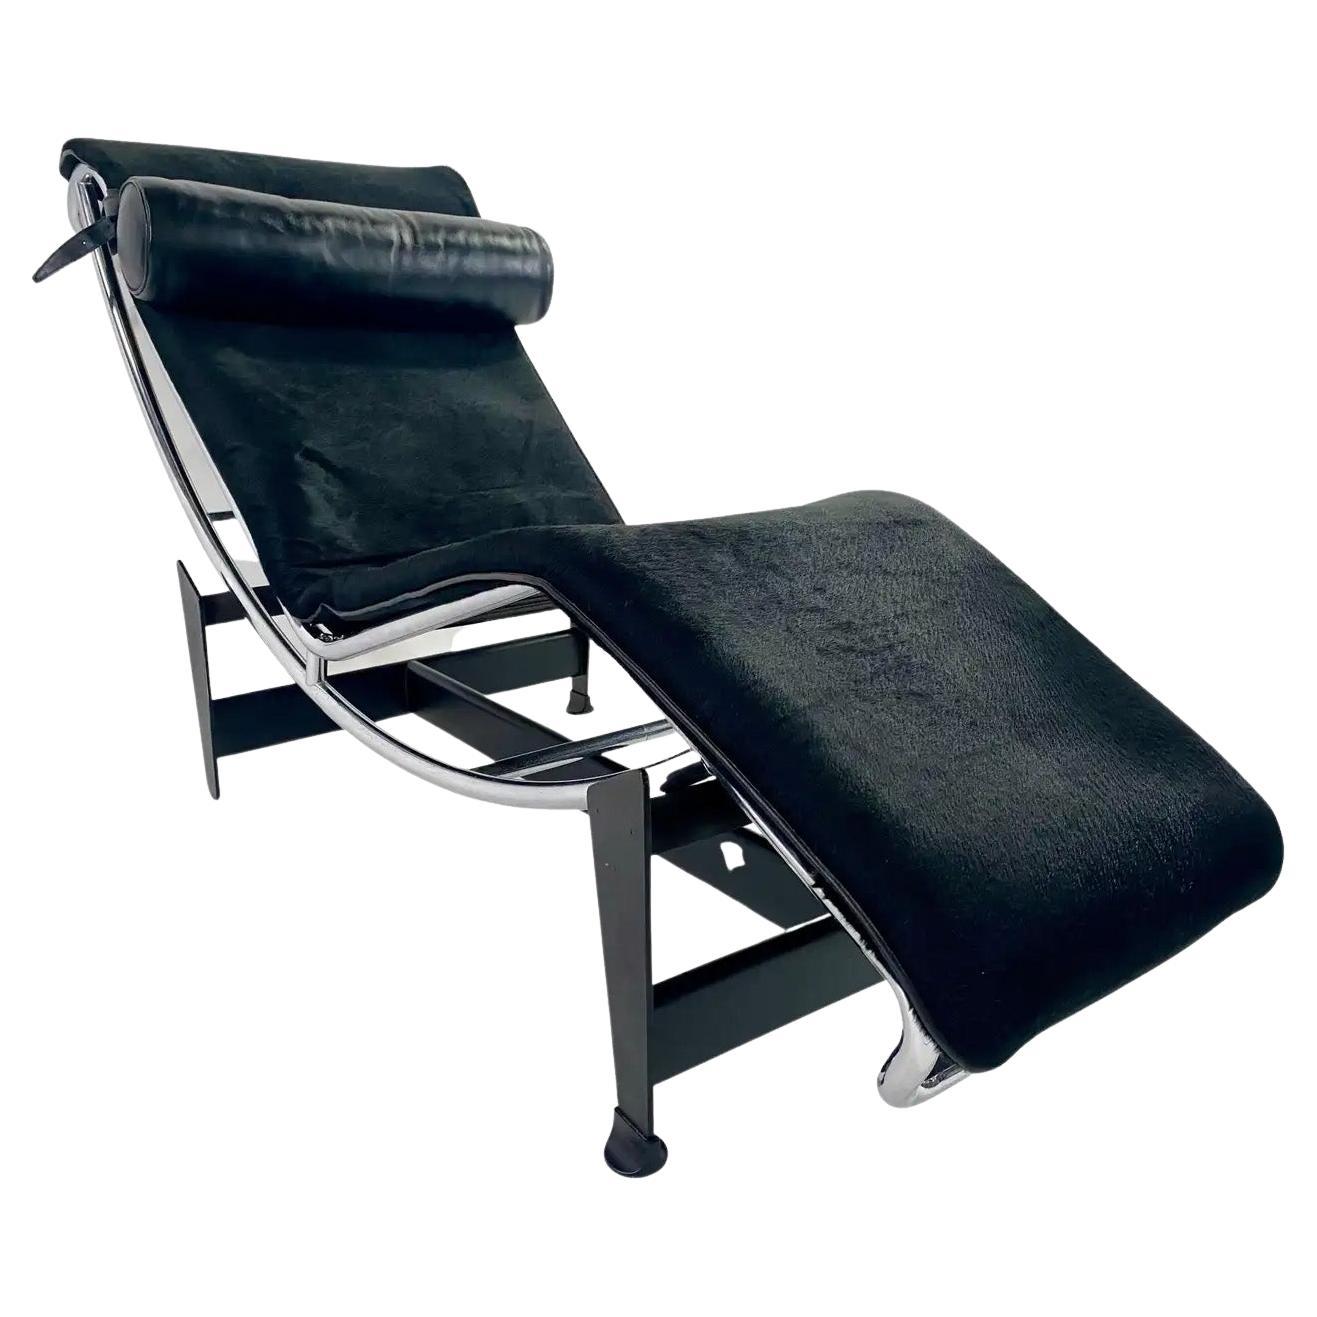 Une chaise longue intemporelle et élégante de style Mid Century Modern conçue par Le Corbusier, Pierre Jeanneret et Charlotte Perriand pour Cassina. Marqué sur le cadre (signature et numéro). 
La chaise longue modèle LC4 est une pièce emblématique